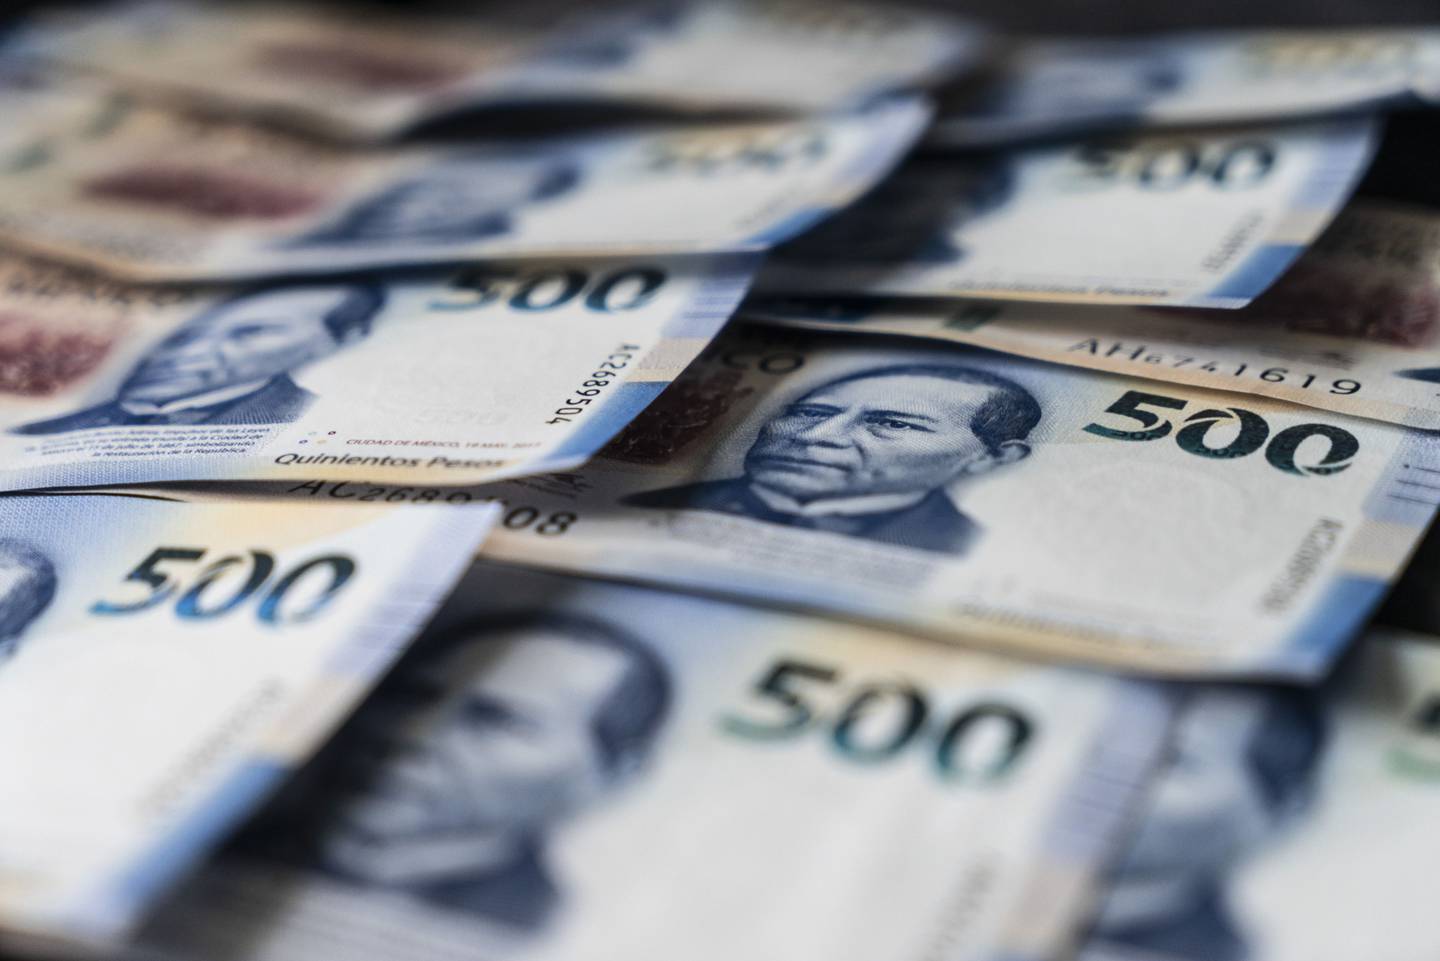 El dólar en México se comercializa en ventanillas bancarias hoy 27 de julio en un promedio de MXN$20,4669 por billete verde, de acuerdo con el portal ElDolarInfo.